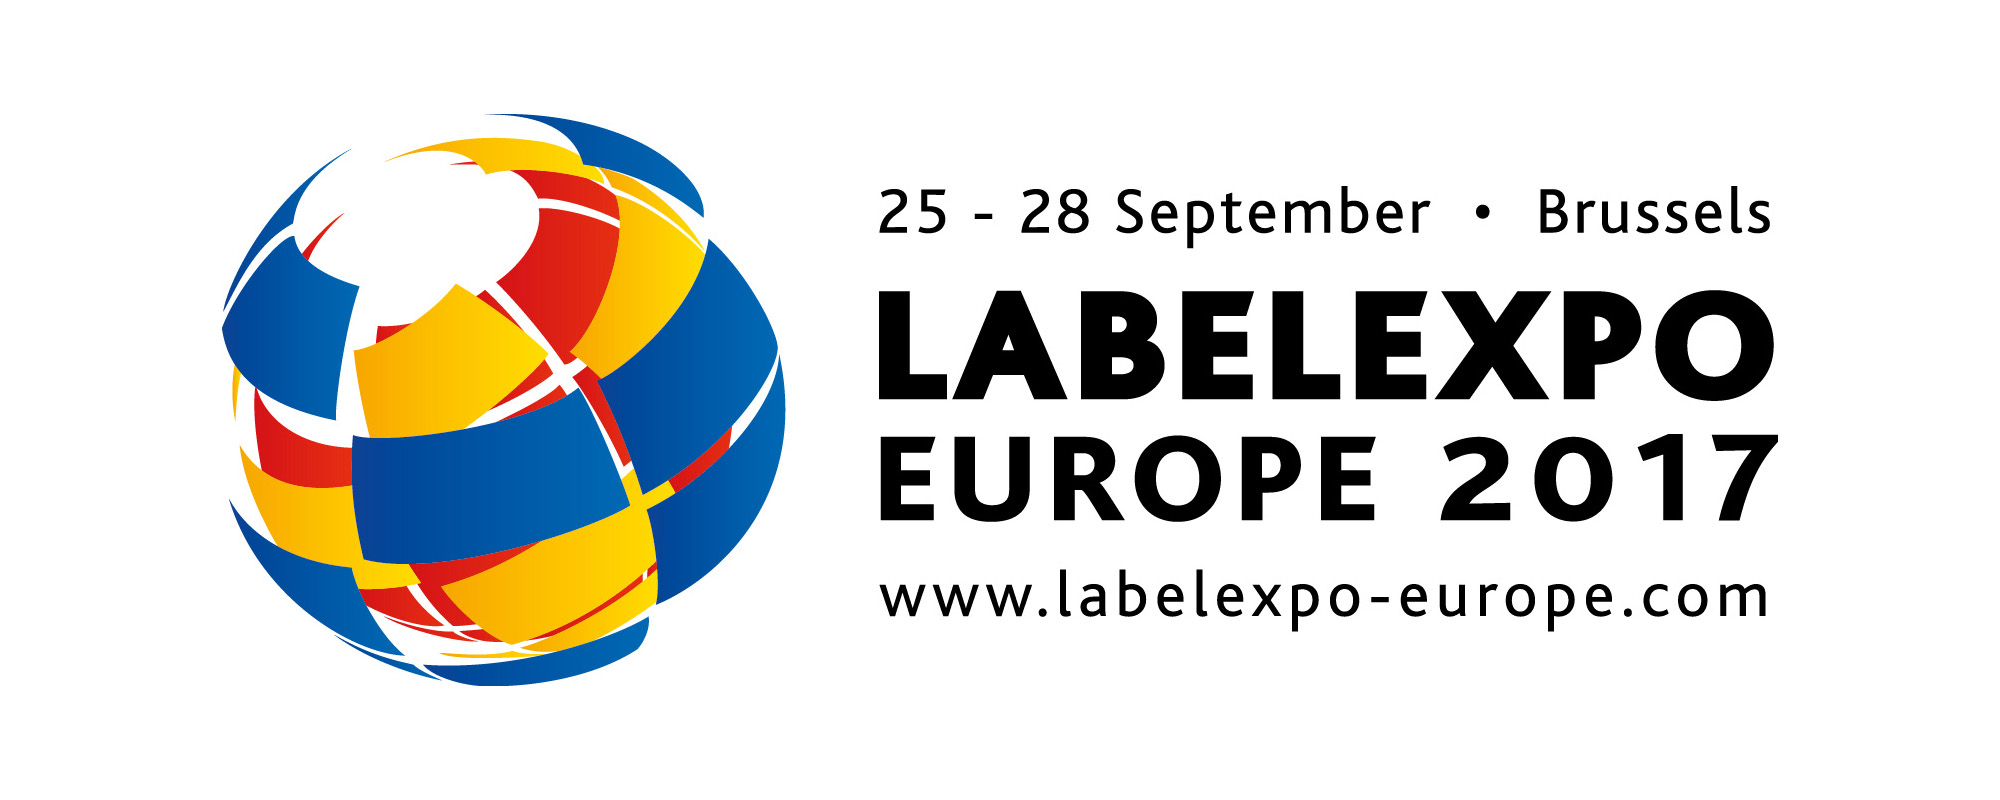  Что посмотреть в Брюсселе на LabelExpo Europe 2017?